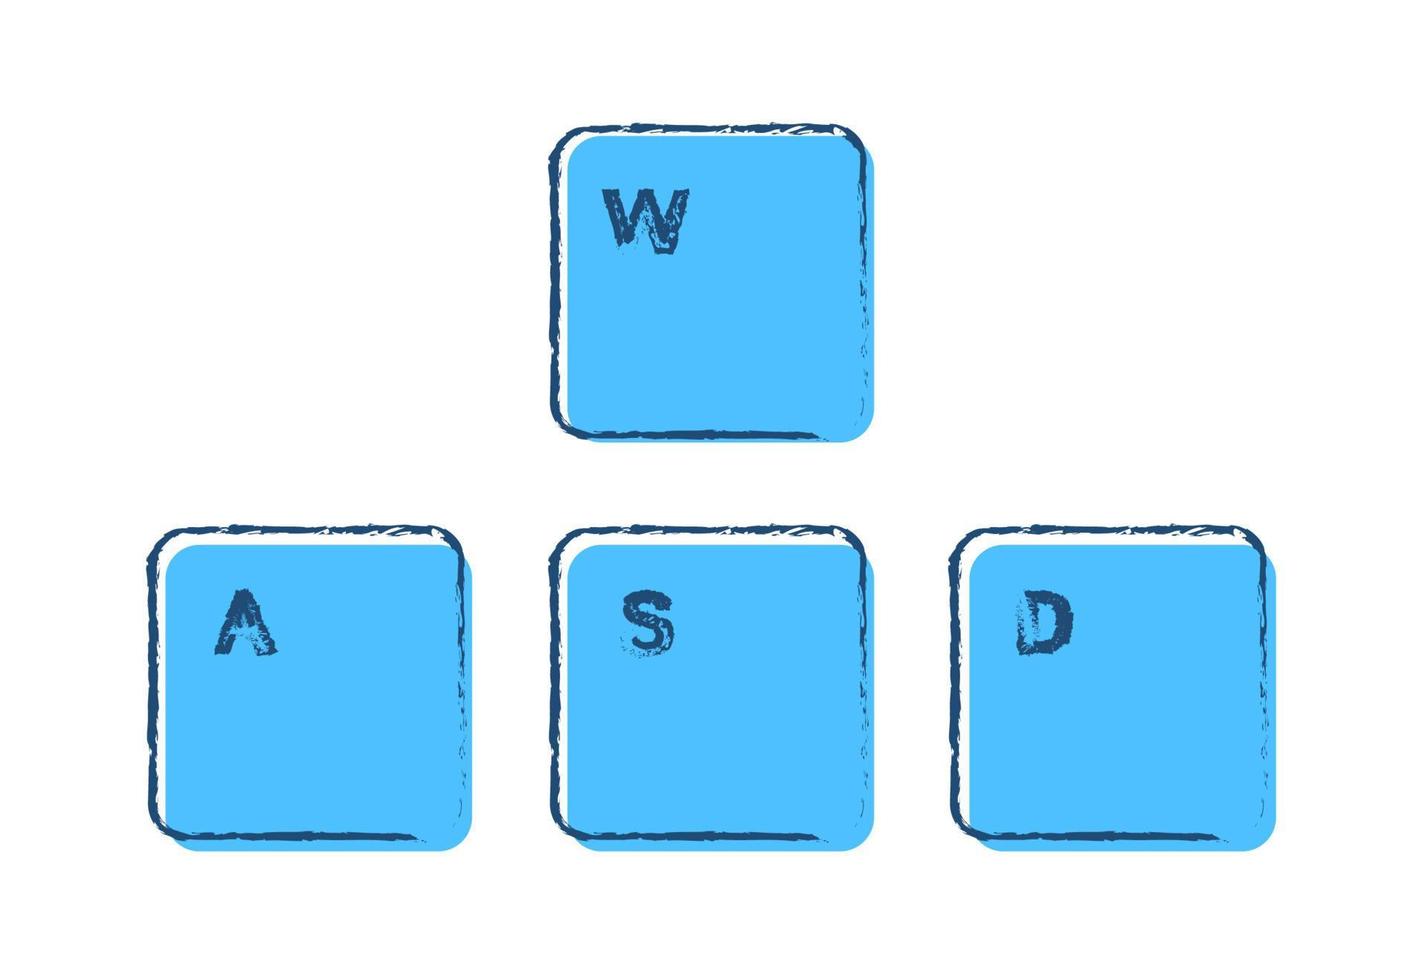 ensemble de touches de clavier de jeu awsd sur fond blanc dessiné à l'encre et aux couleurs bleues. vecteur isolé